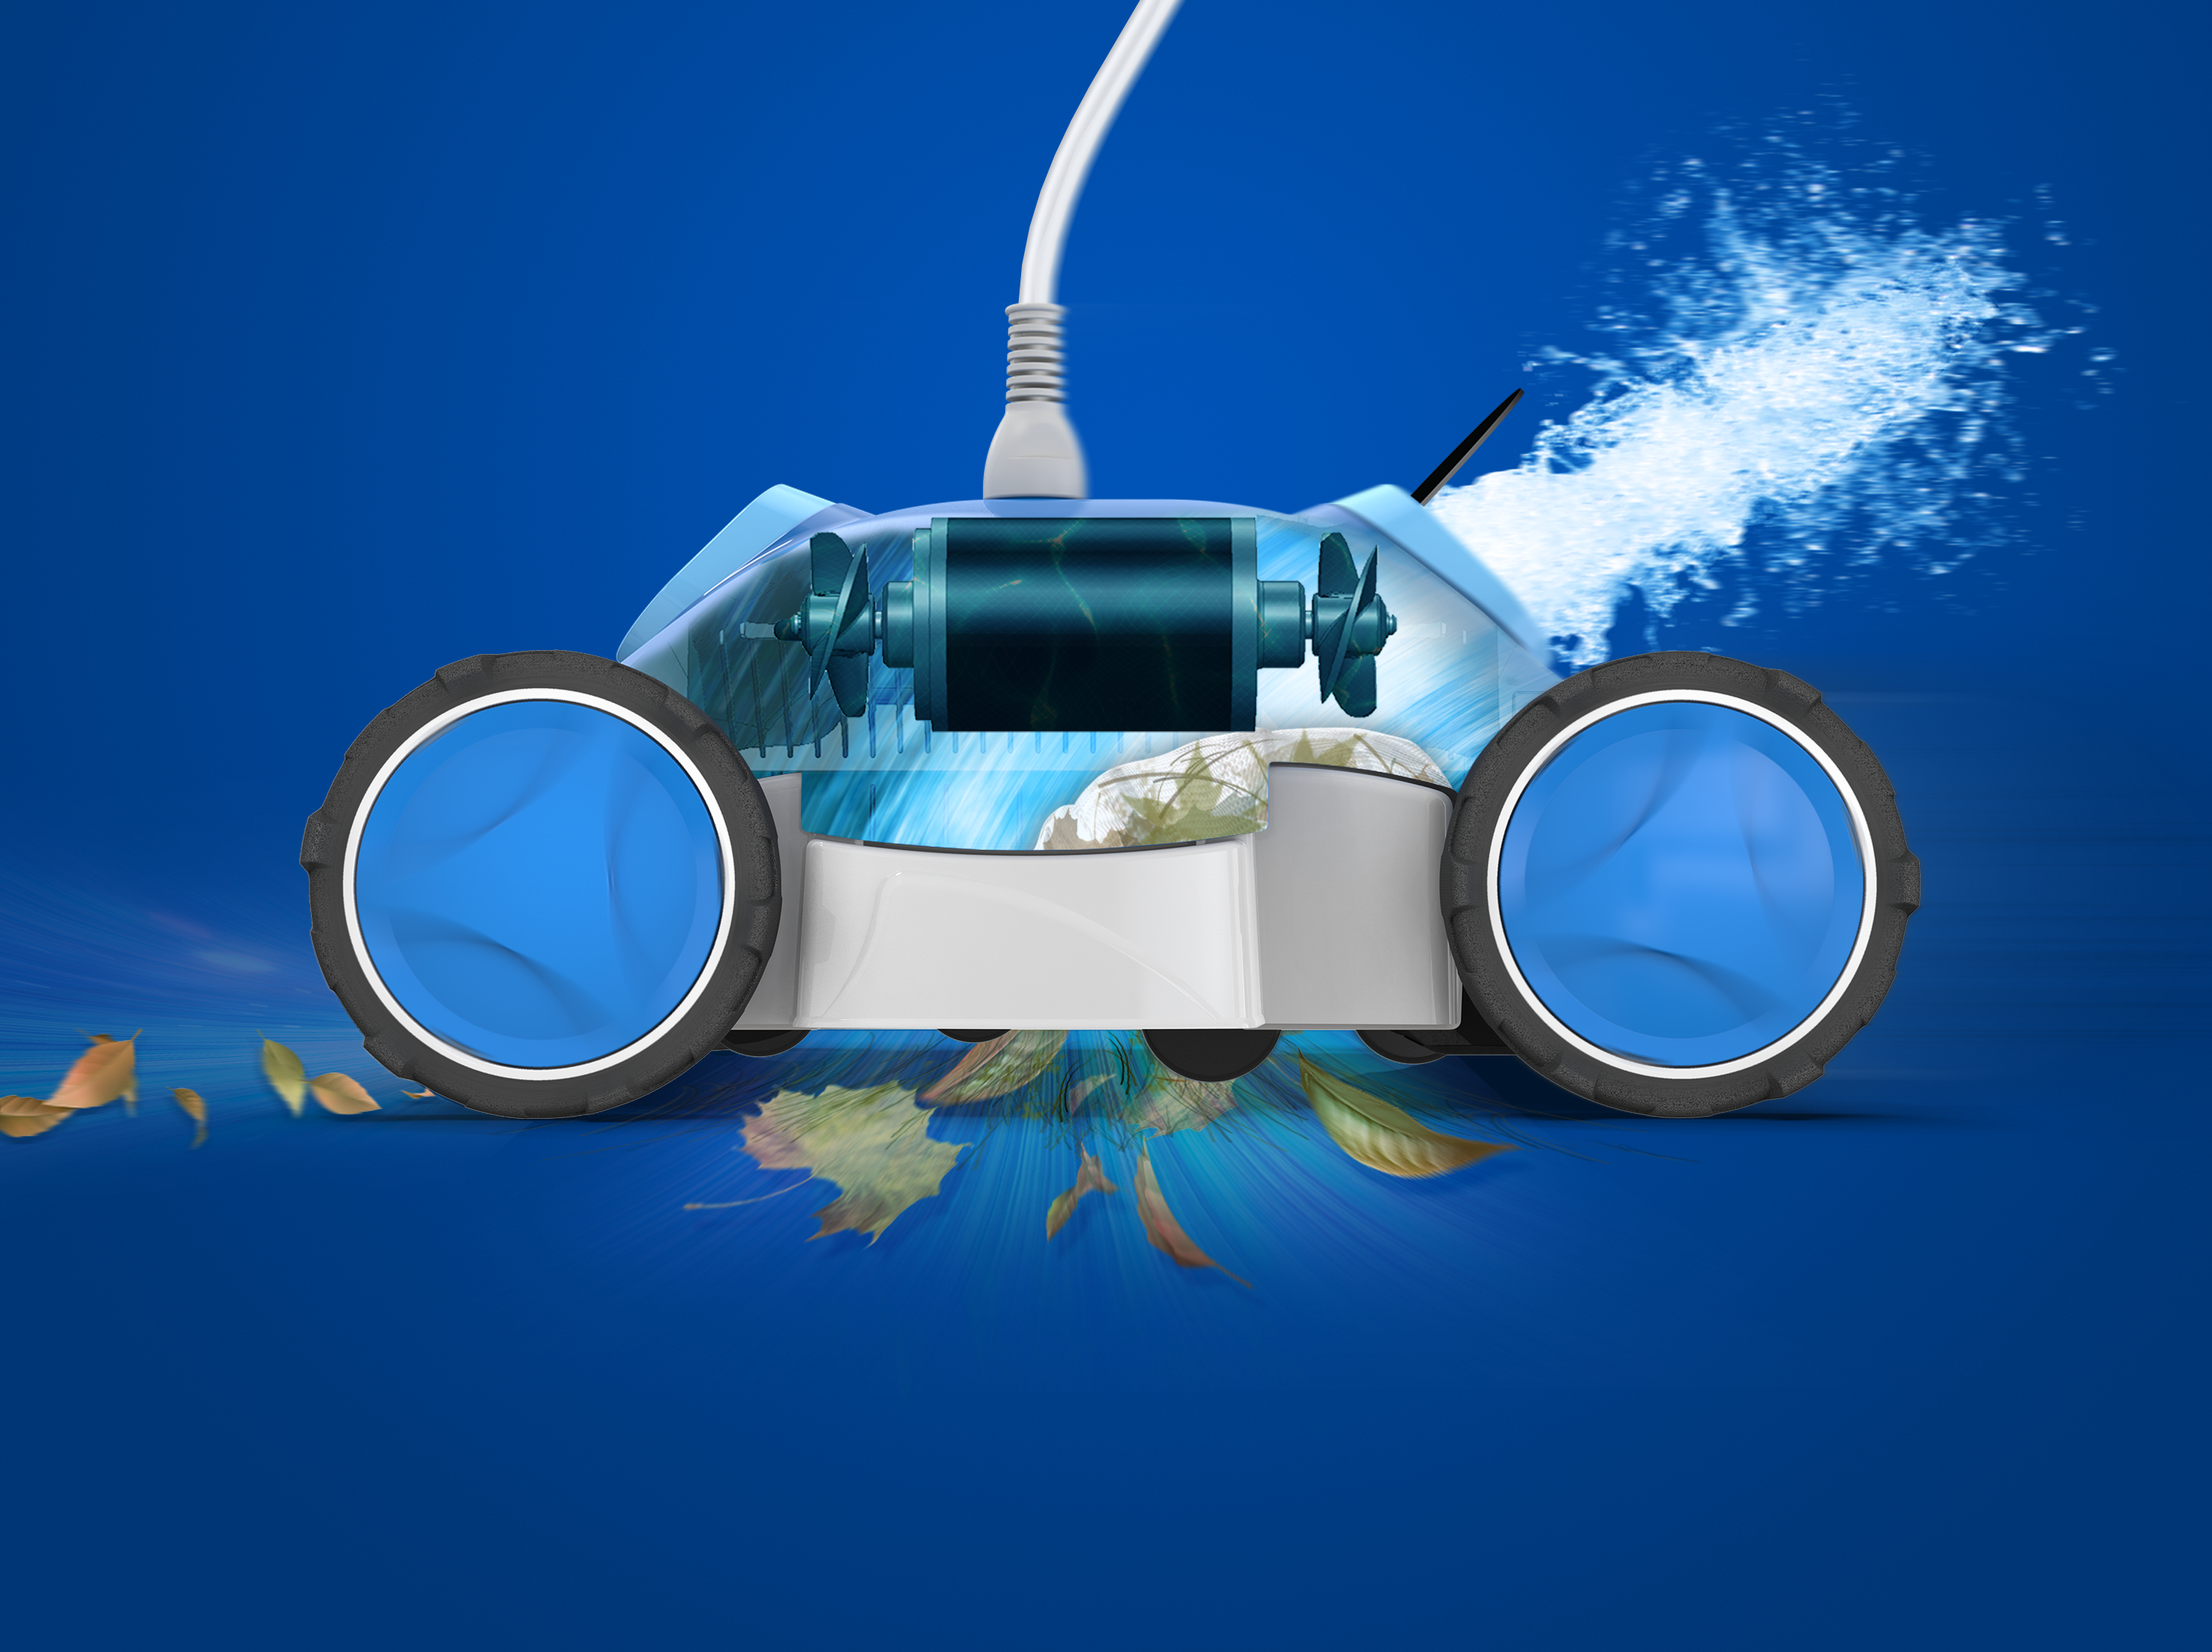 Aqua Products Dash Aboveground Robotic Pool Cleaner